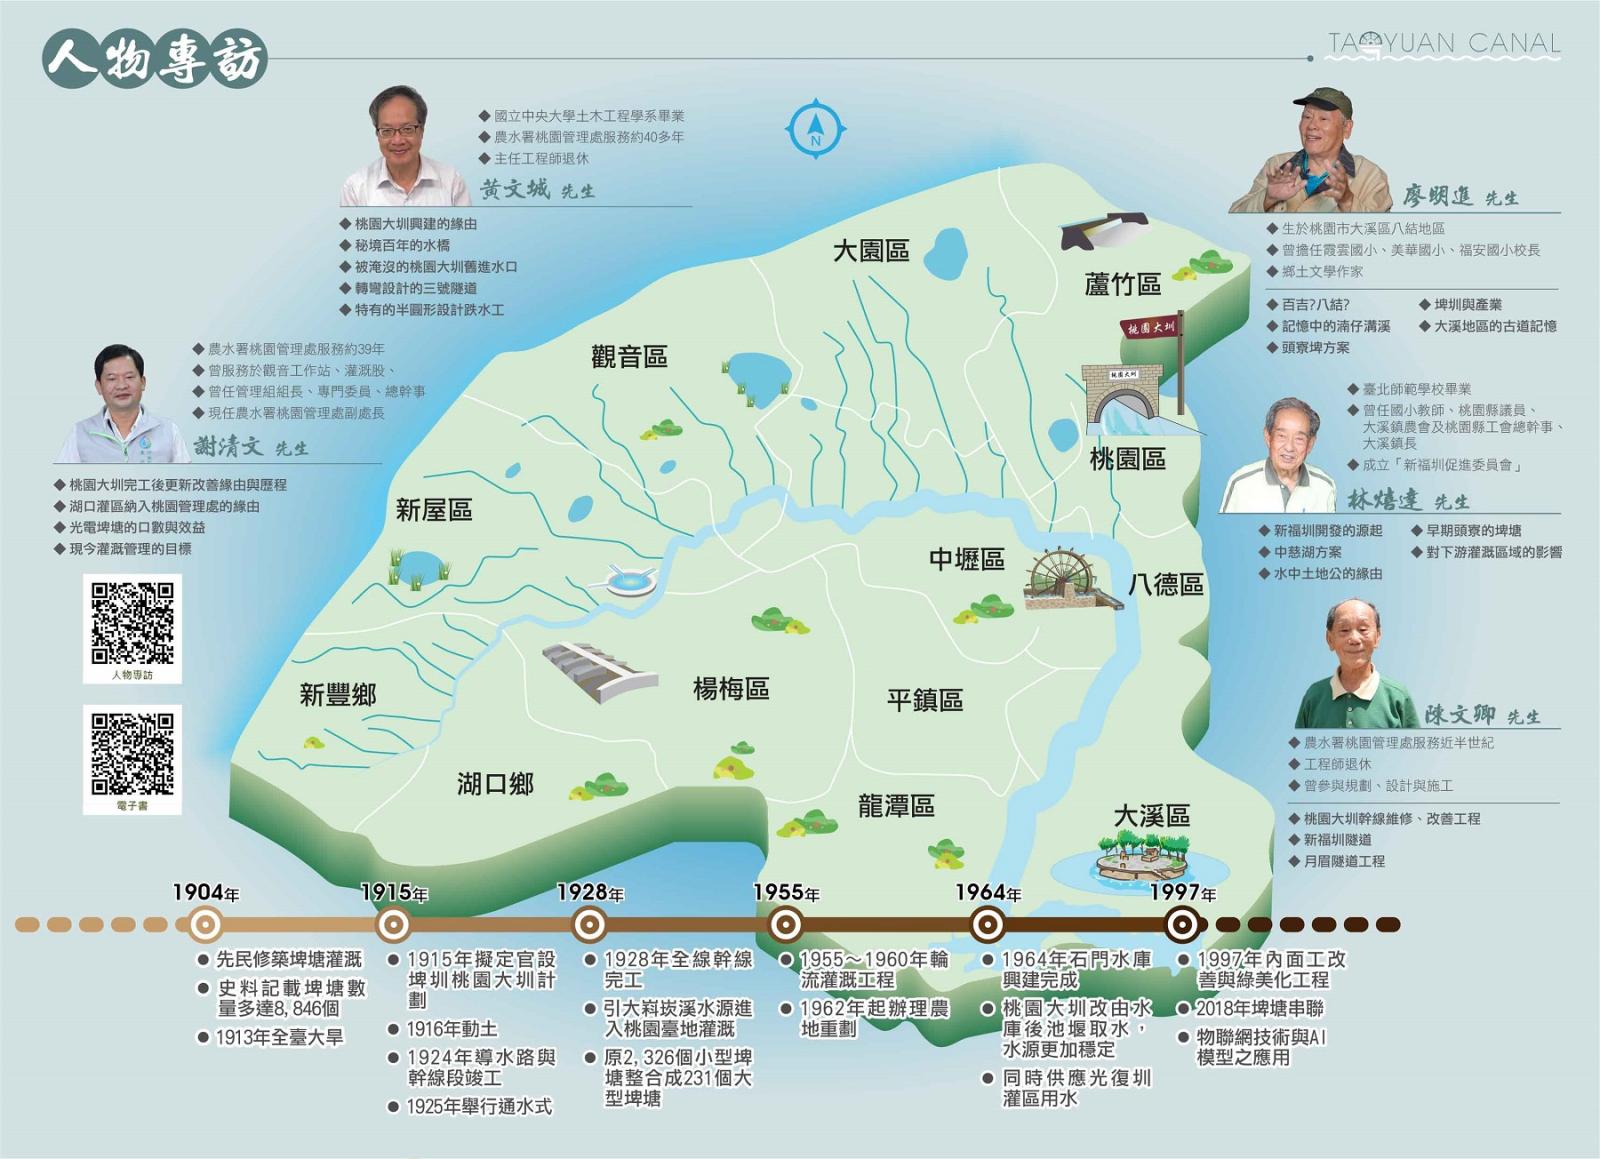 桃園大圳灌溉區域圖